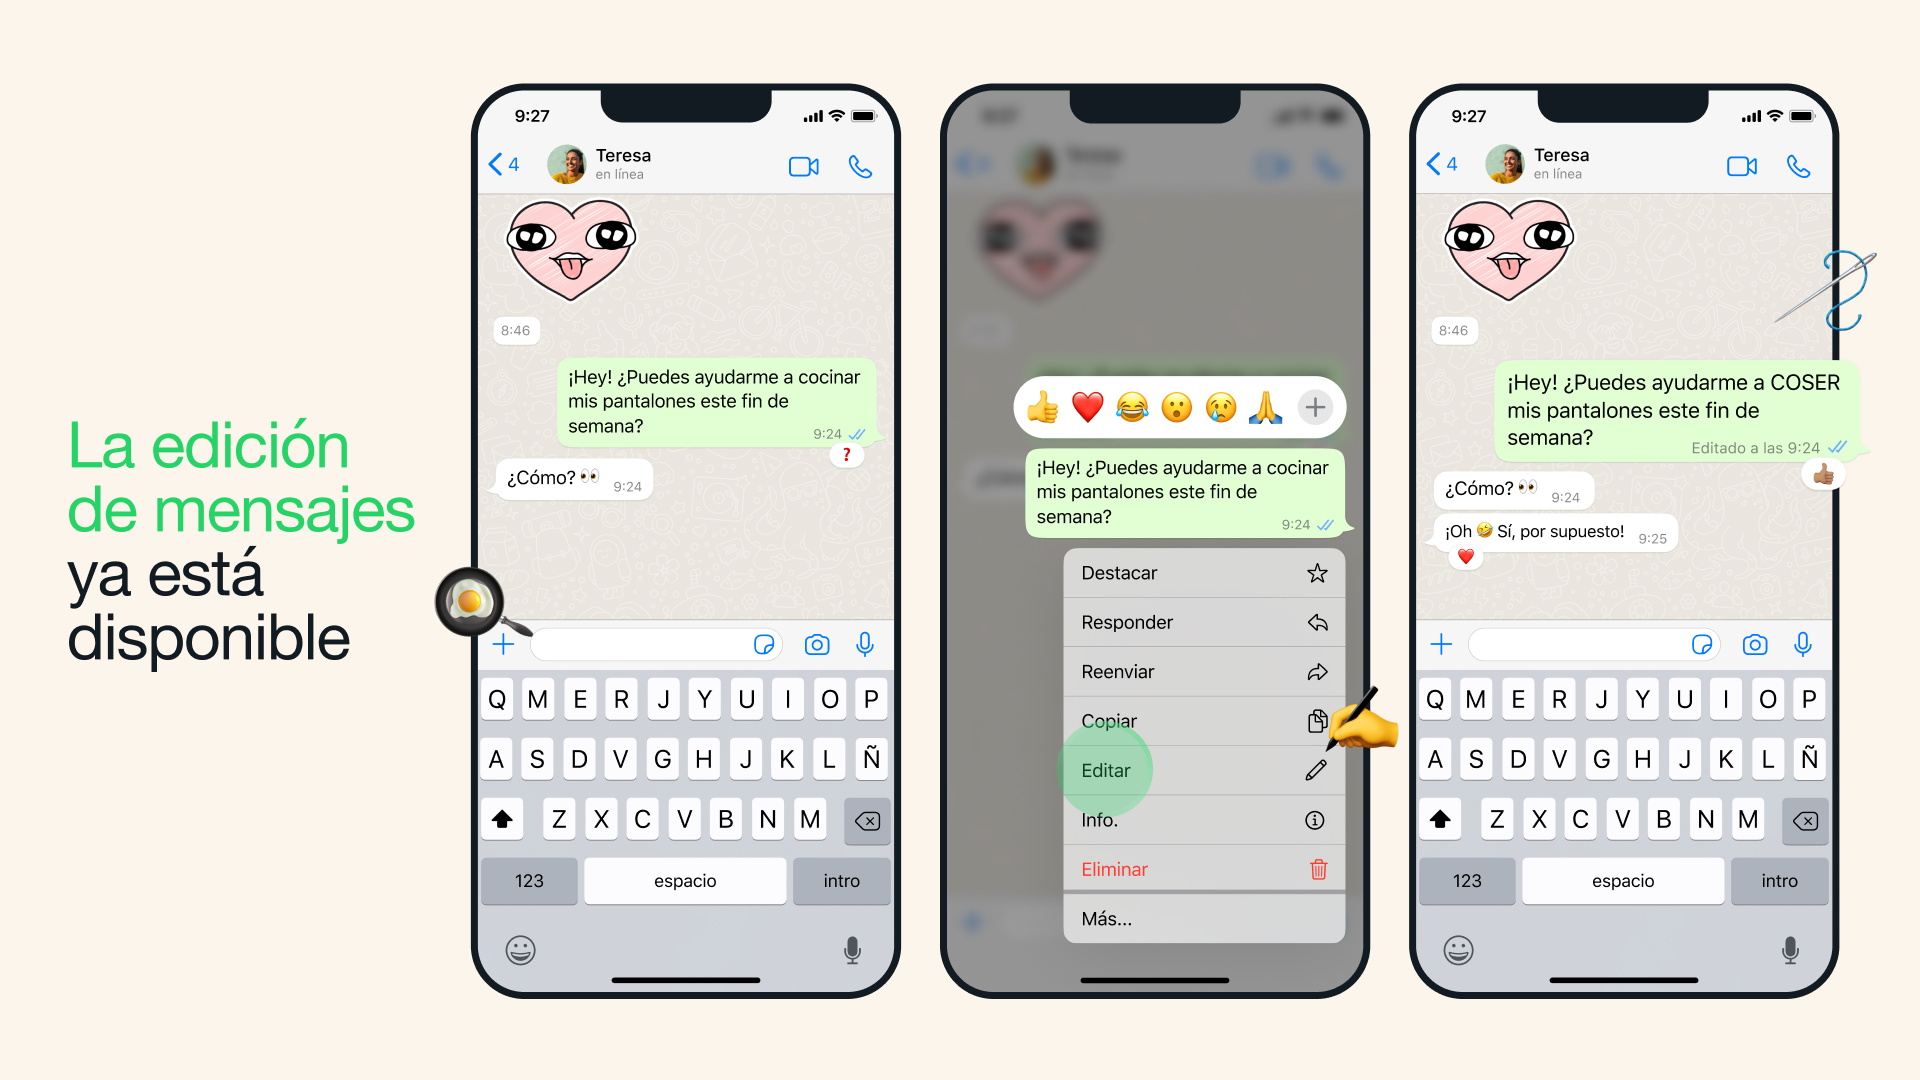 La edición de mensajes en WhatsApp solo se podrá realizar hasta 15 minutos luego de enviado el texto original. (WhatsApp)